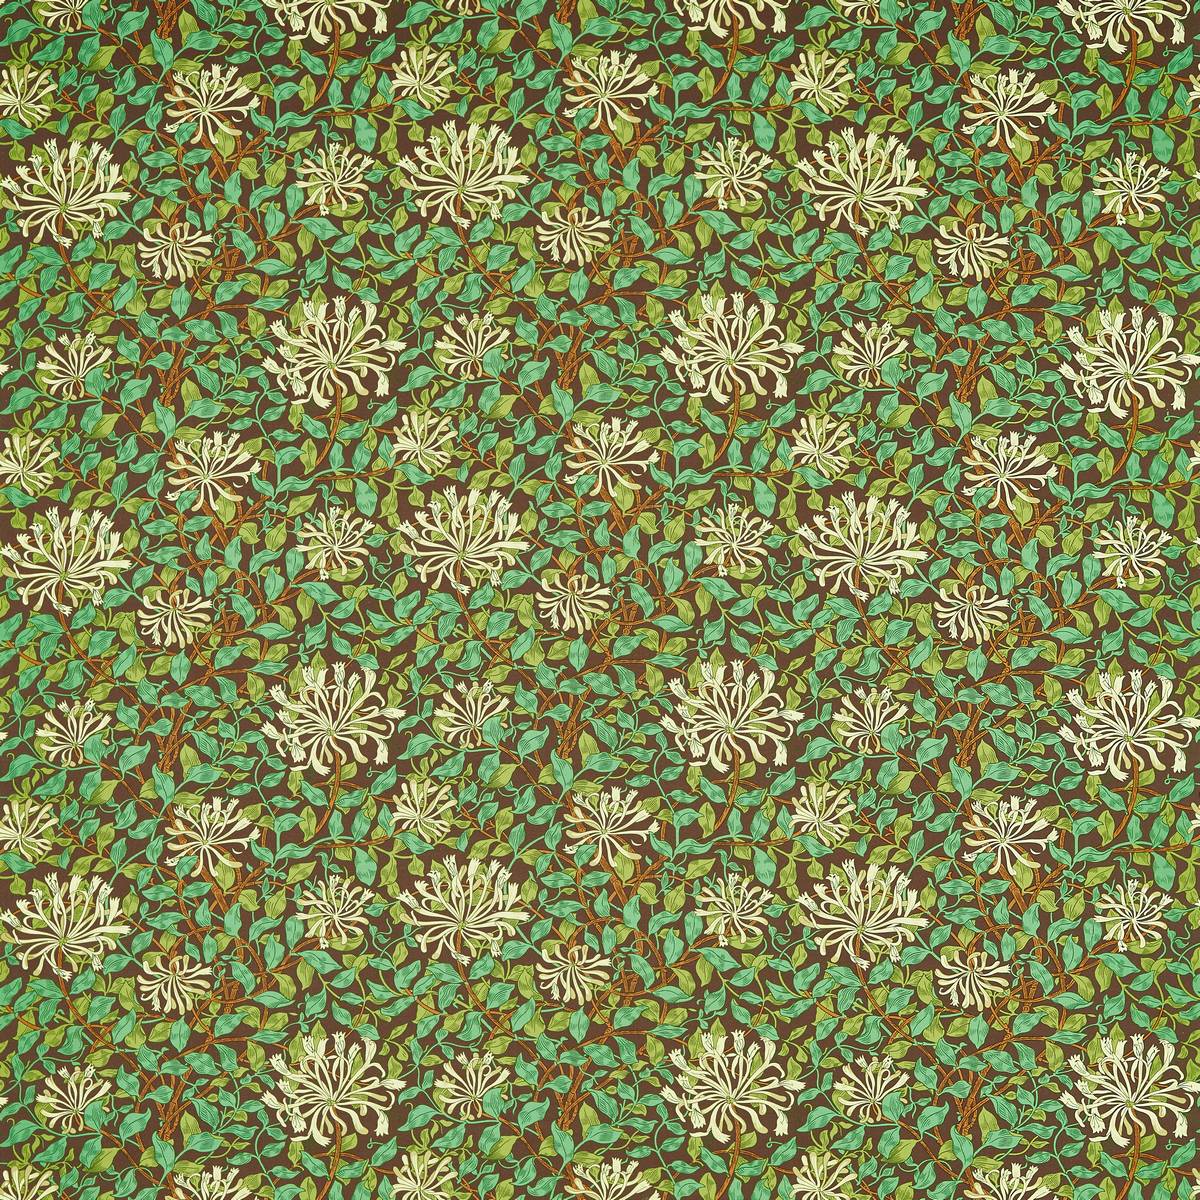 Honeysuckle Autumn Fabric by William Morris & Co.